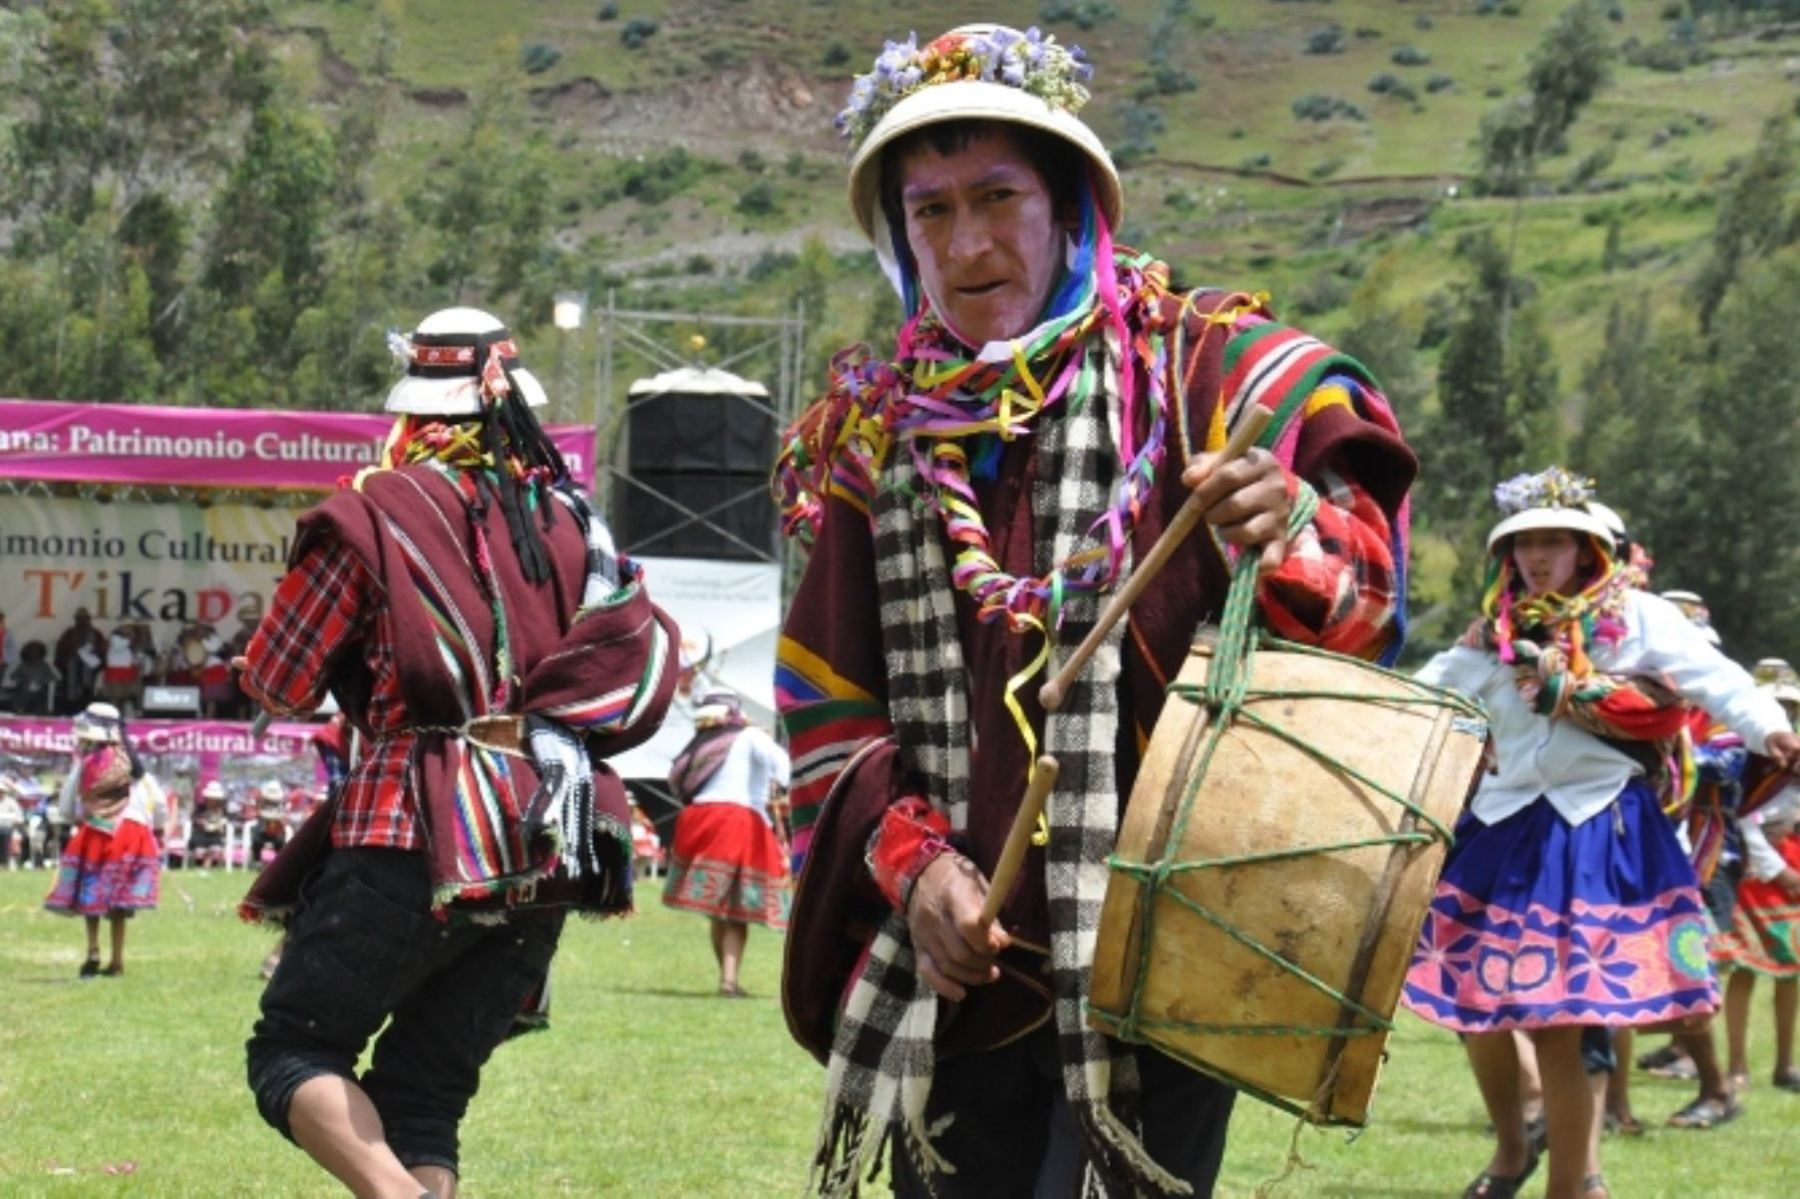 La provincia apurimeña de Cotabambas, y en particular su capital Tambobamba, se prepara para celebrar el tradicional Carnaval T